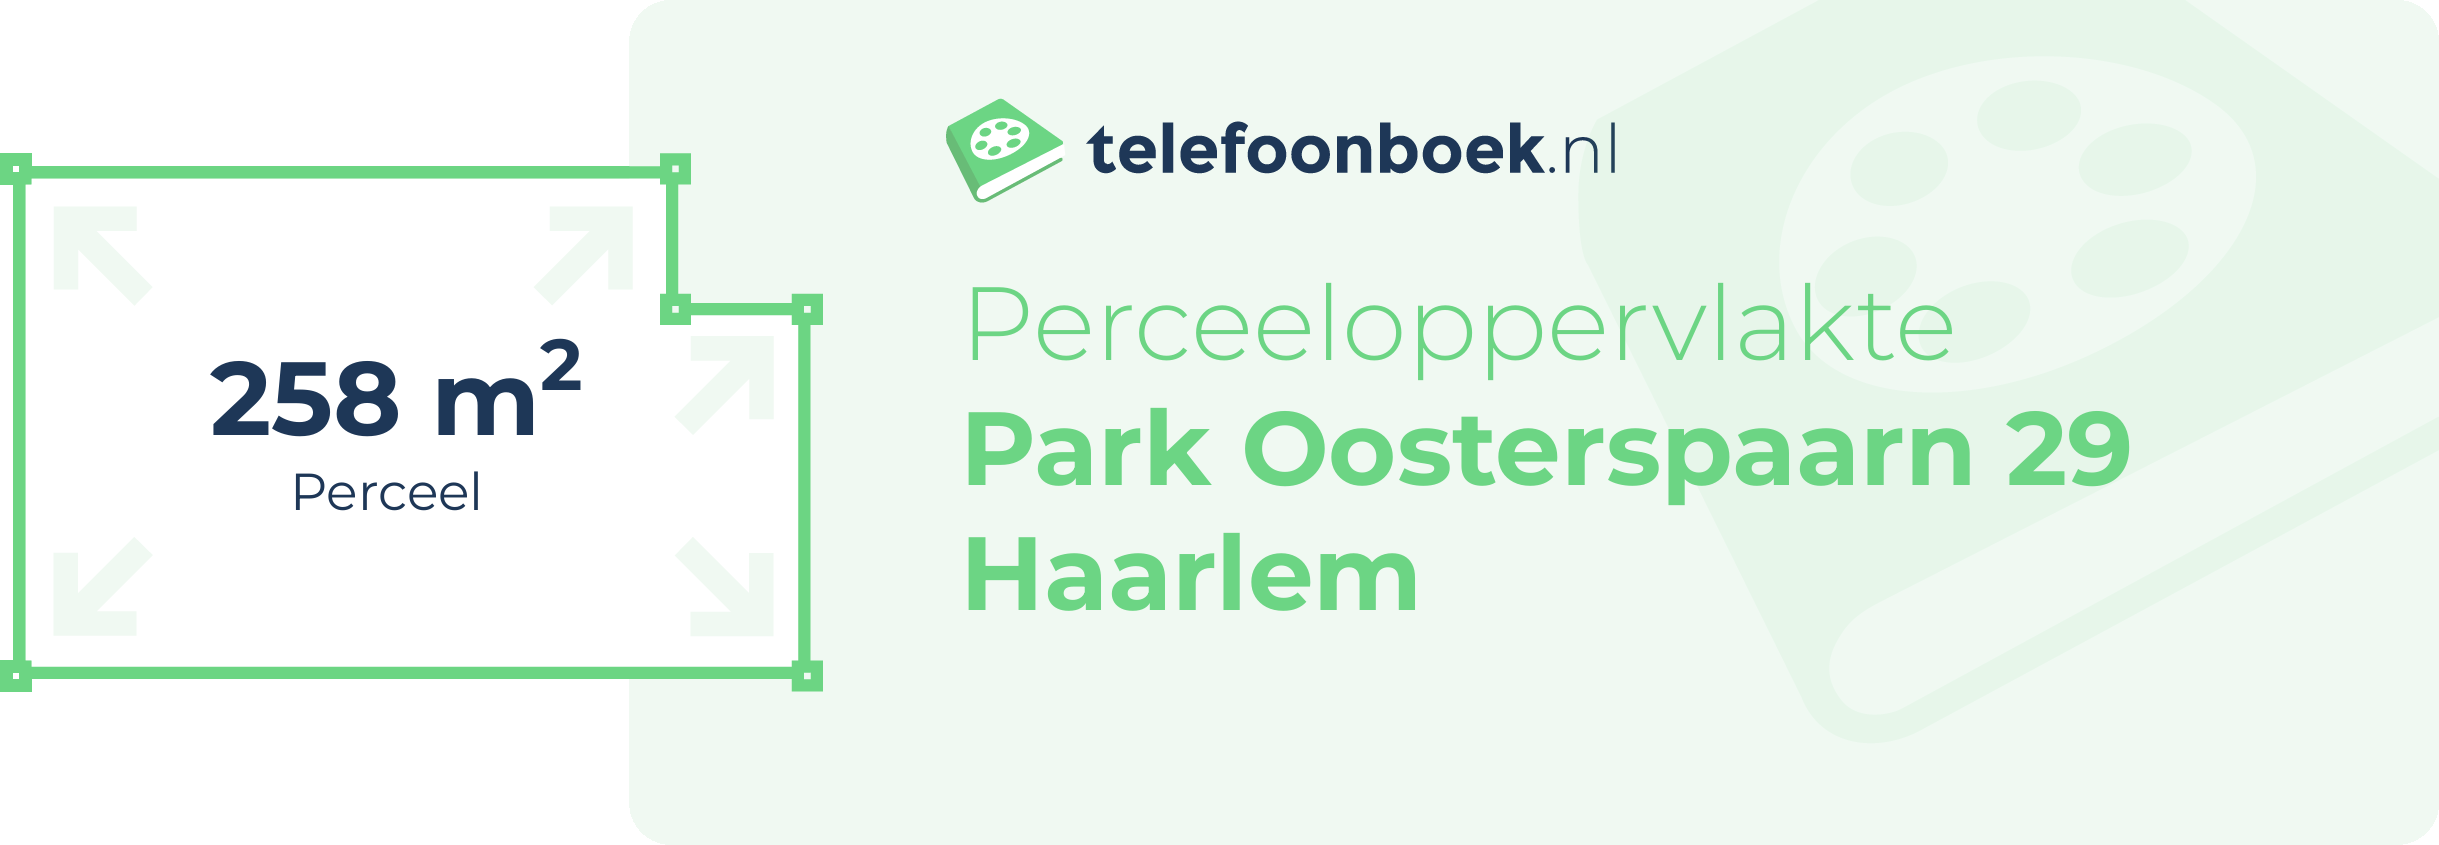 Perceeloppervlakte Park Oosterspaarn 29 Haarlem